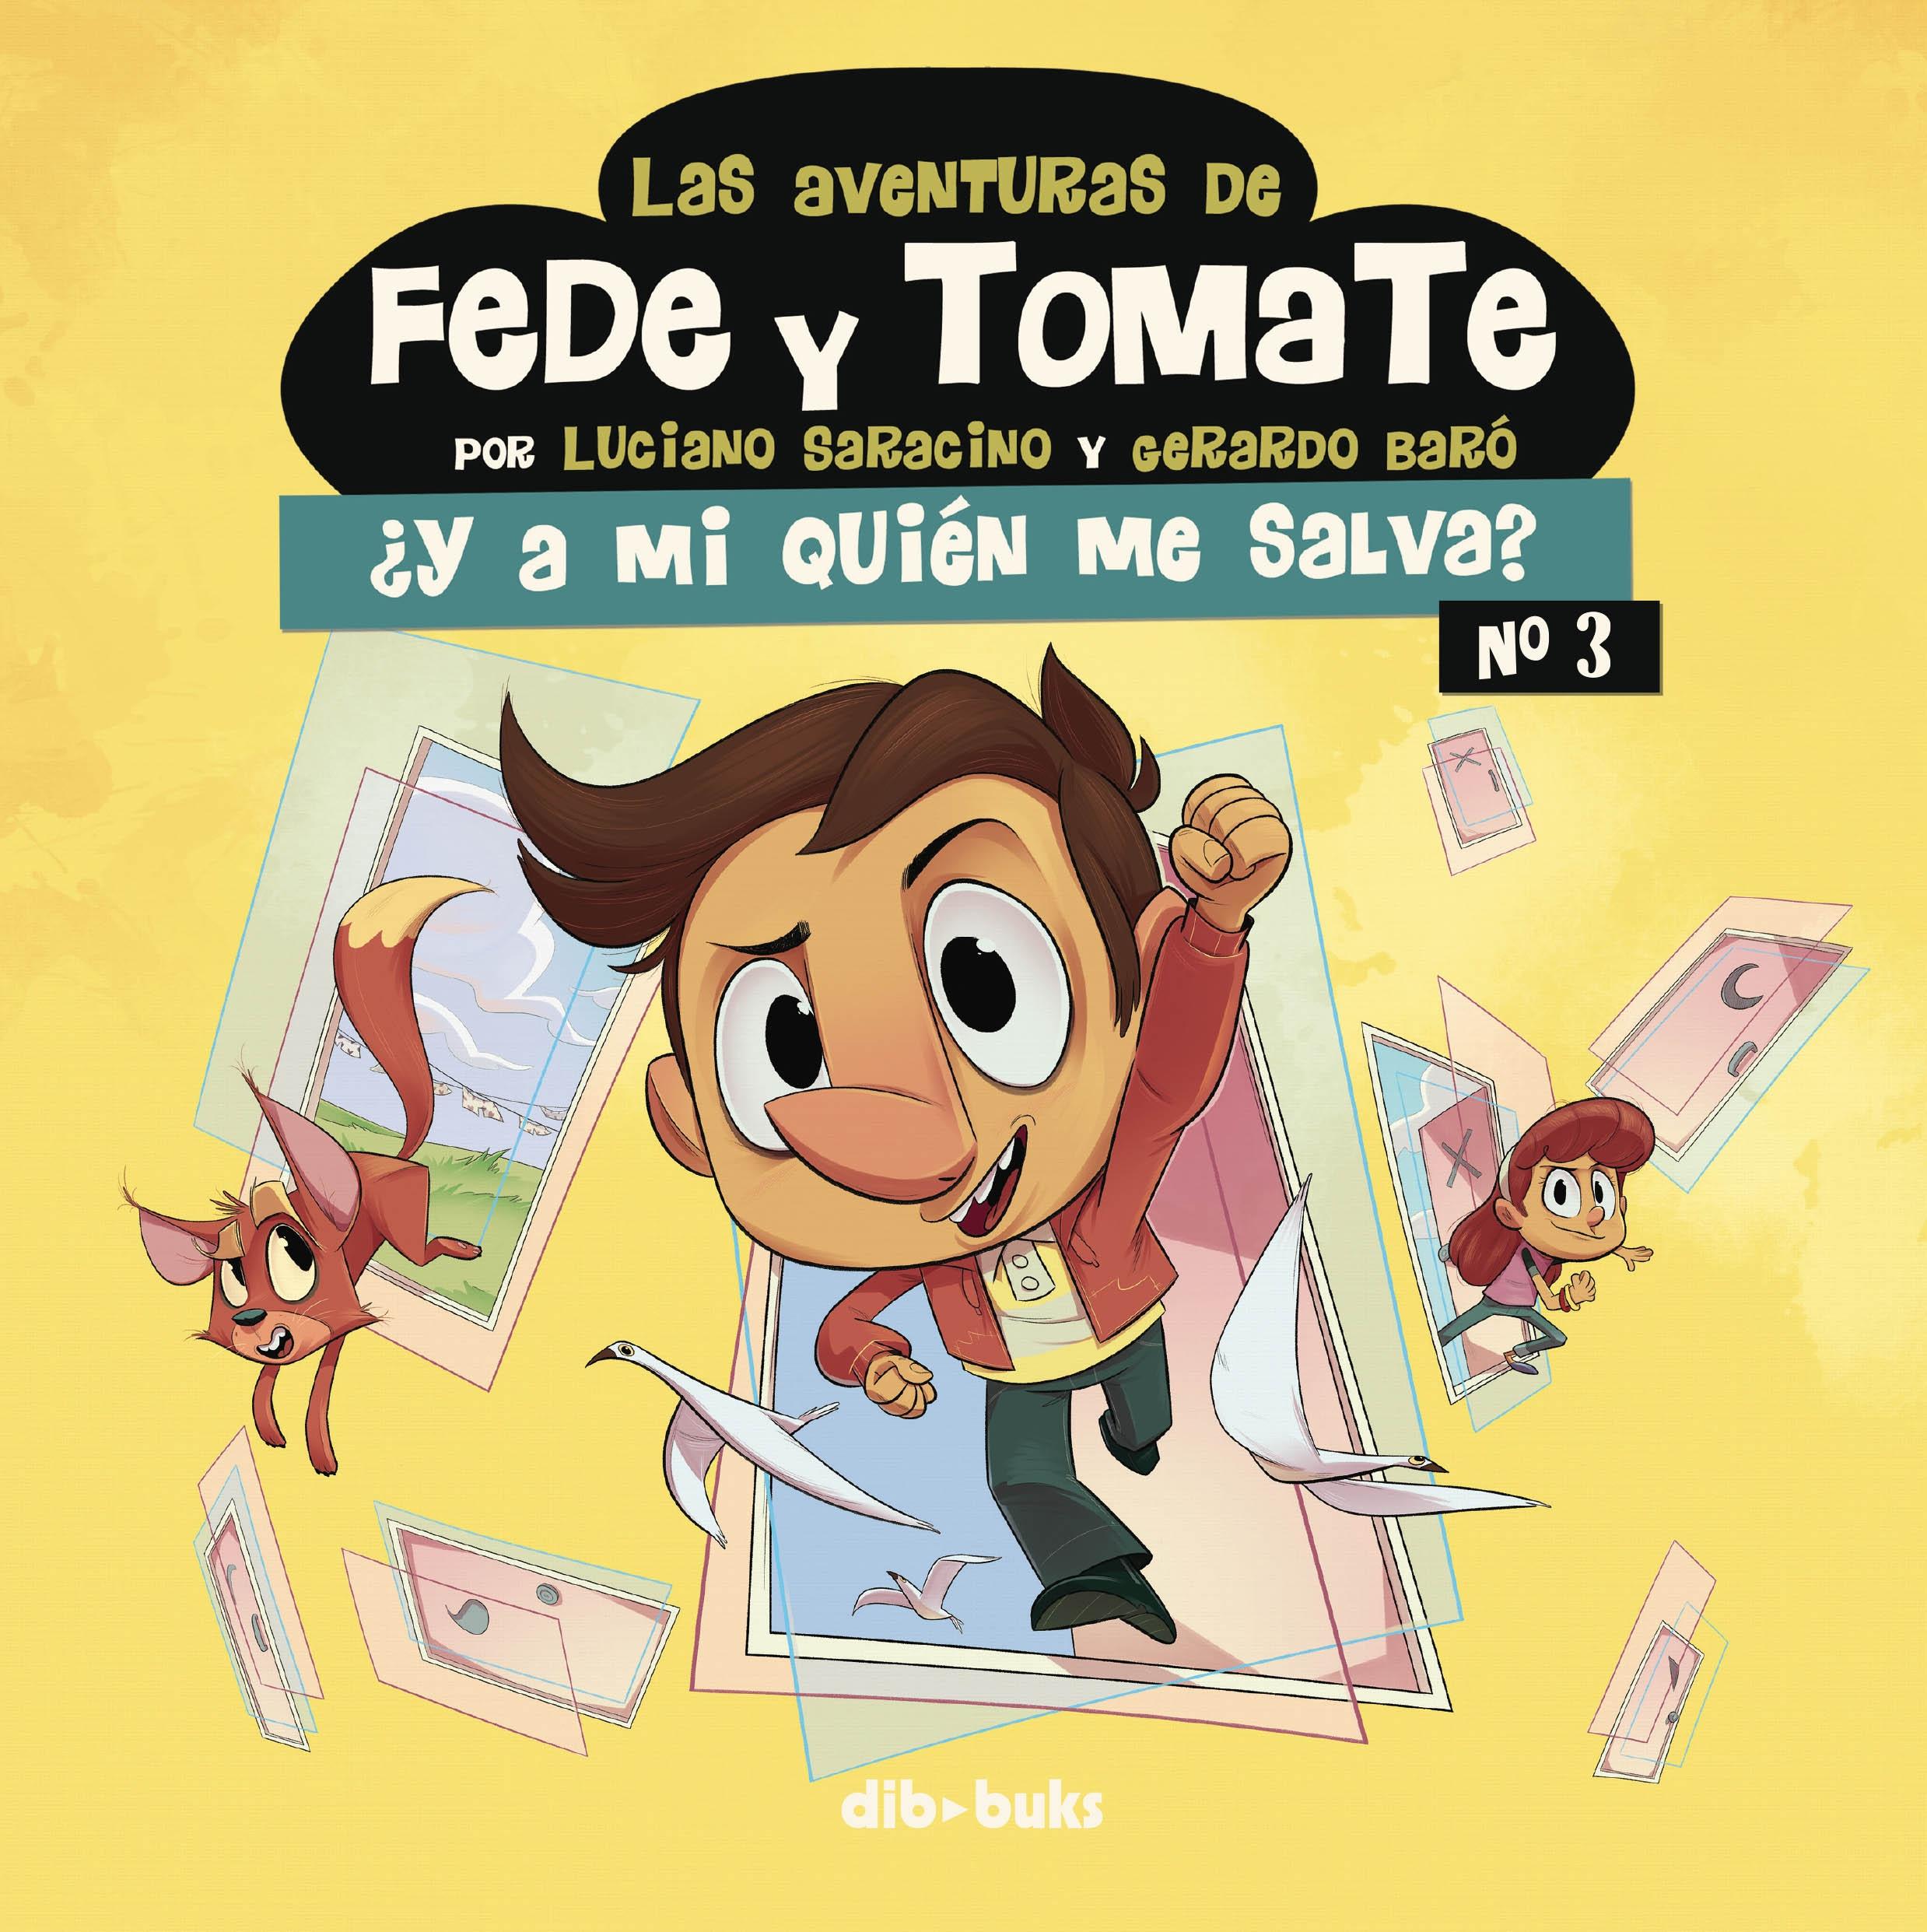 Las Aventuras de Fede y Tomate 3 "¿Y a mi Quién Me Salva?". 